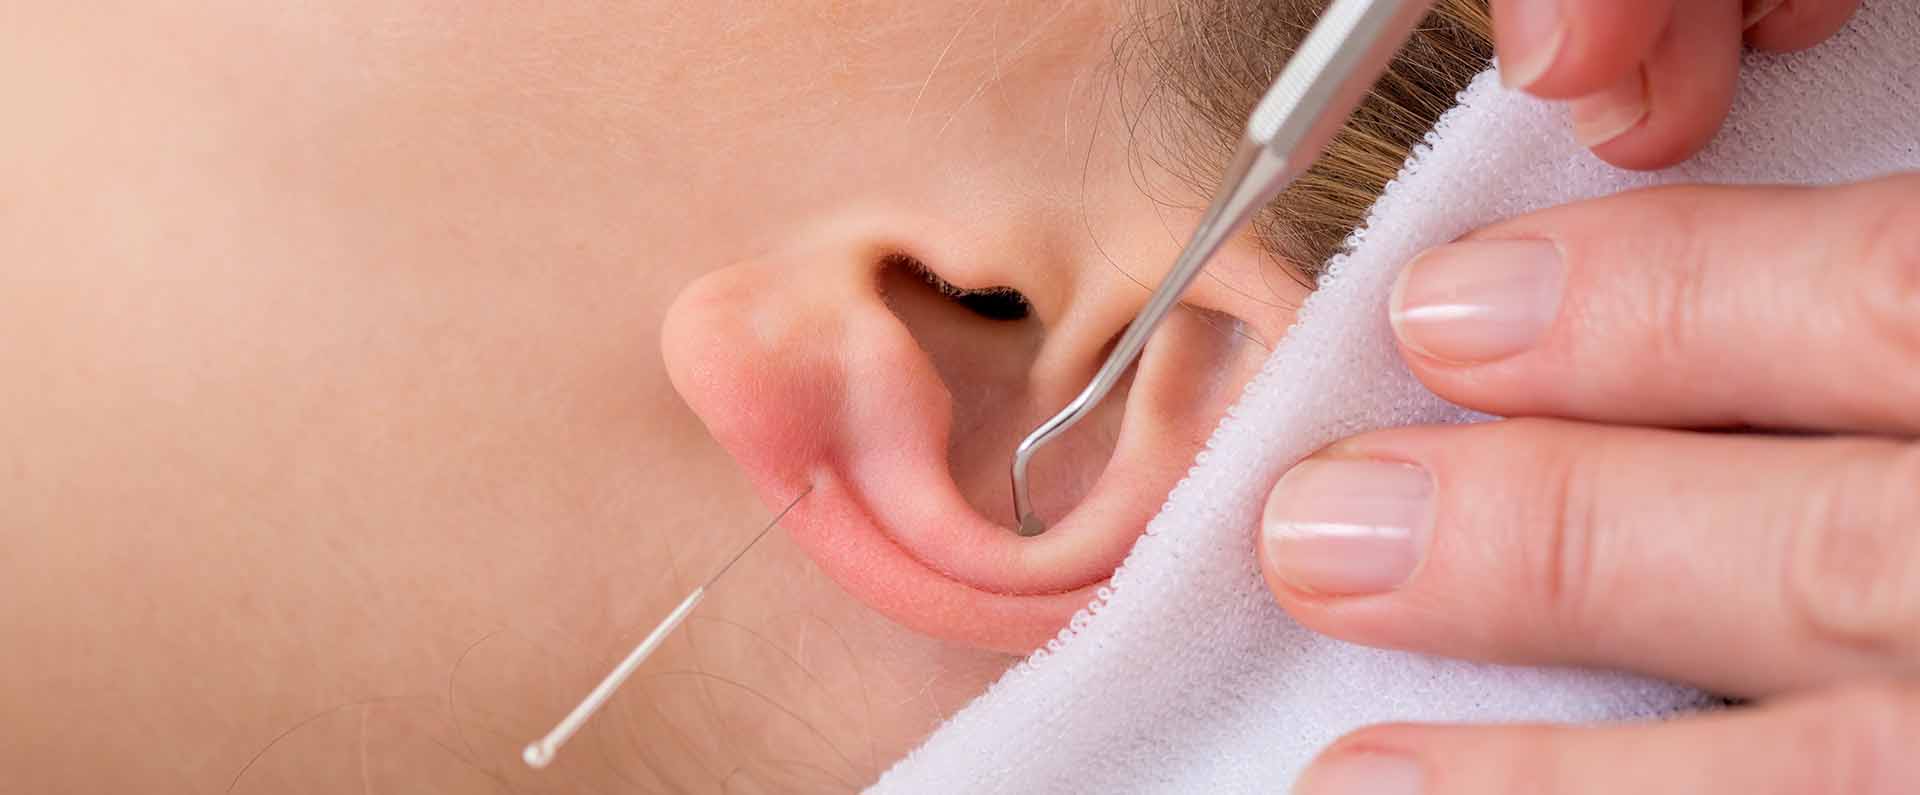 orecchio agopuntura topbig opt